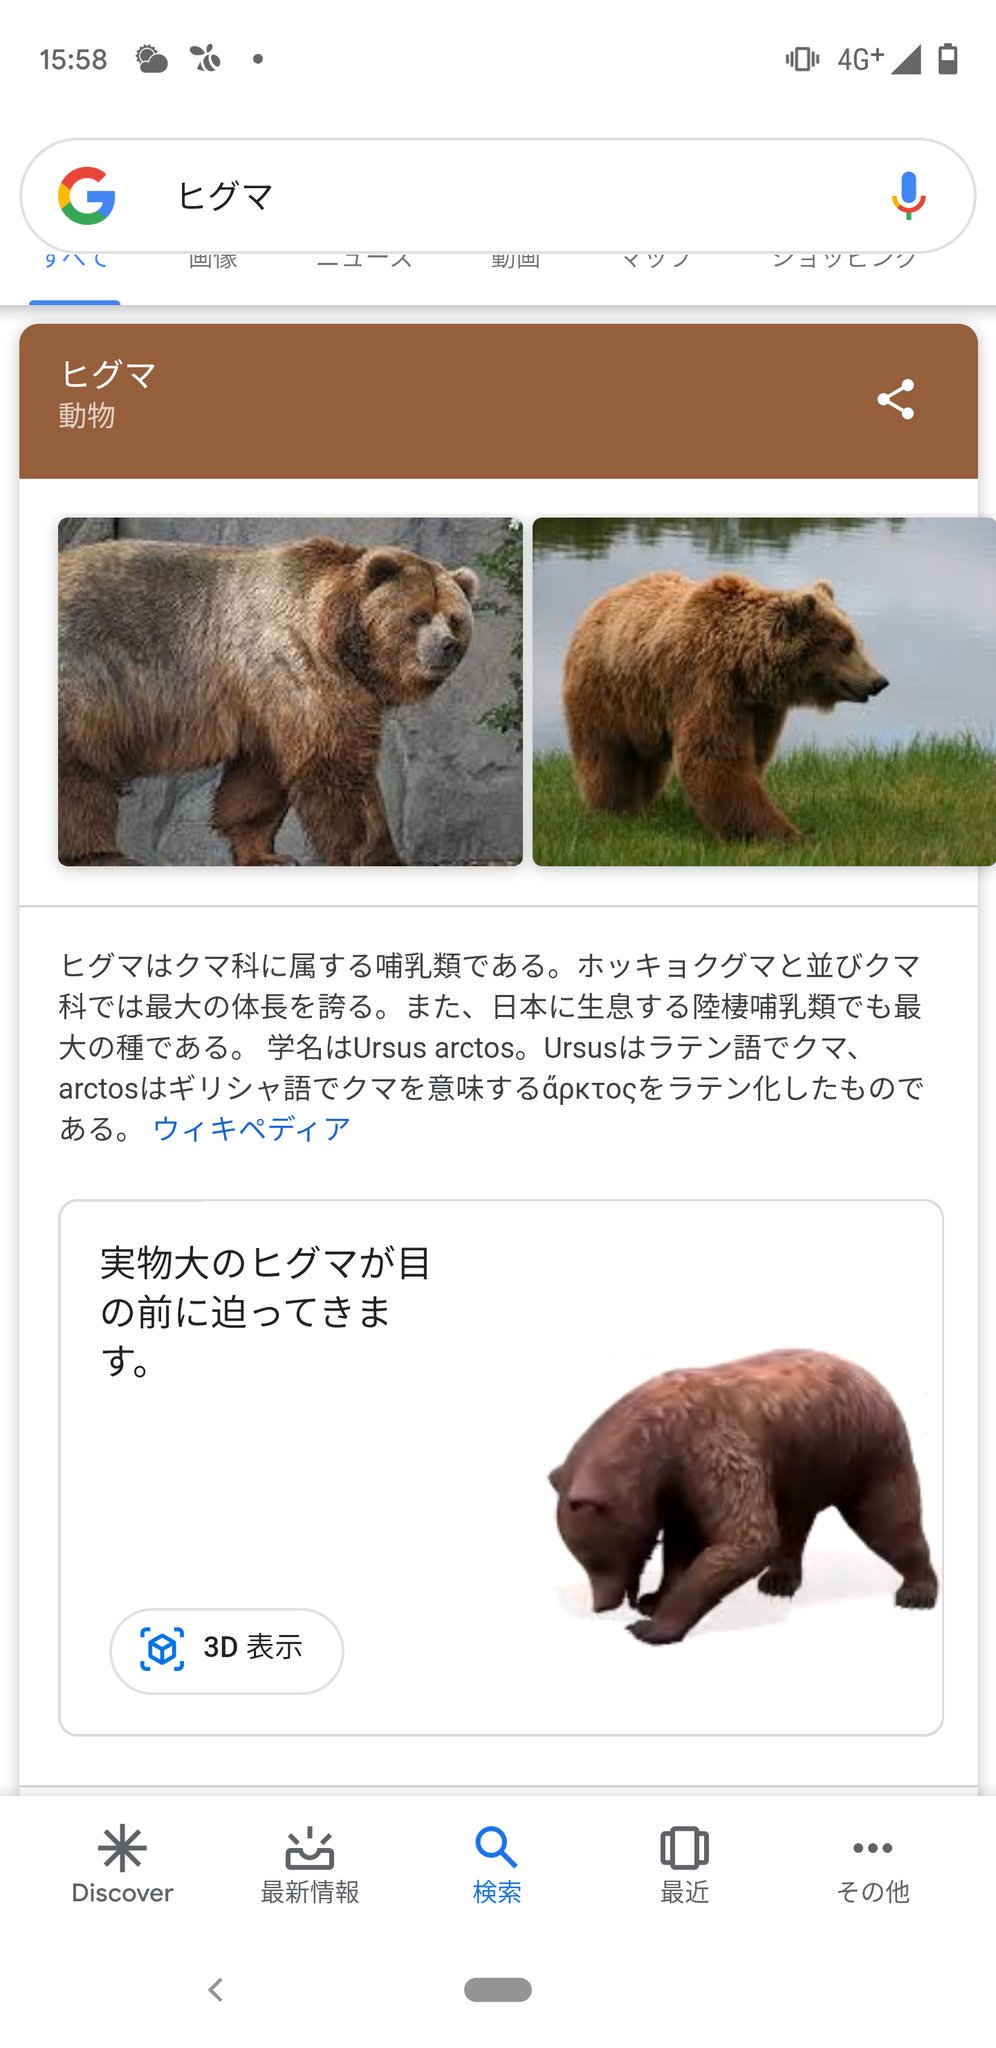 Twitter पर のぶクマ ヴァイオレット クマーガーデン クマ関係の皆様へ Google検索でヒグマと調べてみてください 3dモデルの ヒグマがでてきて 現実世界との重ね合わせもできるみたいです